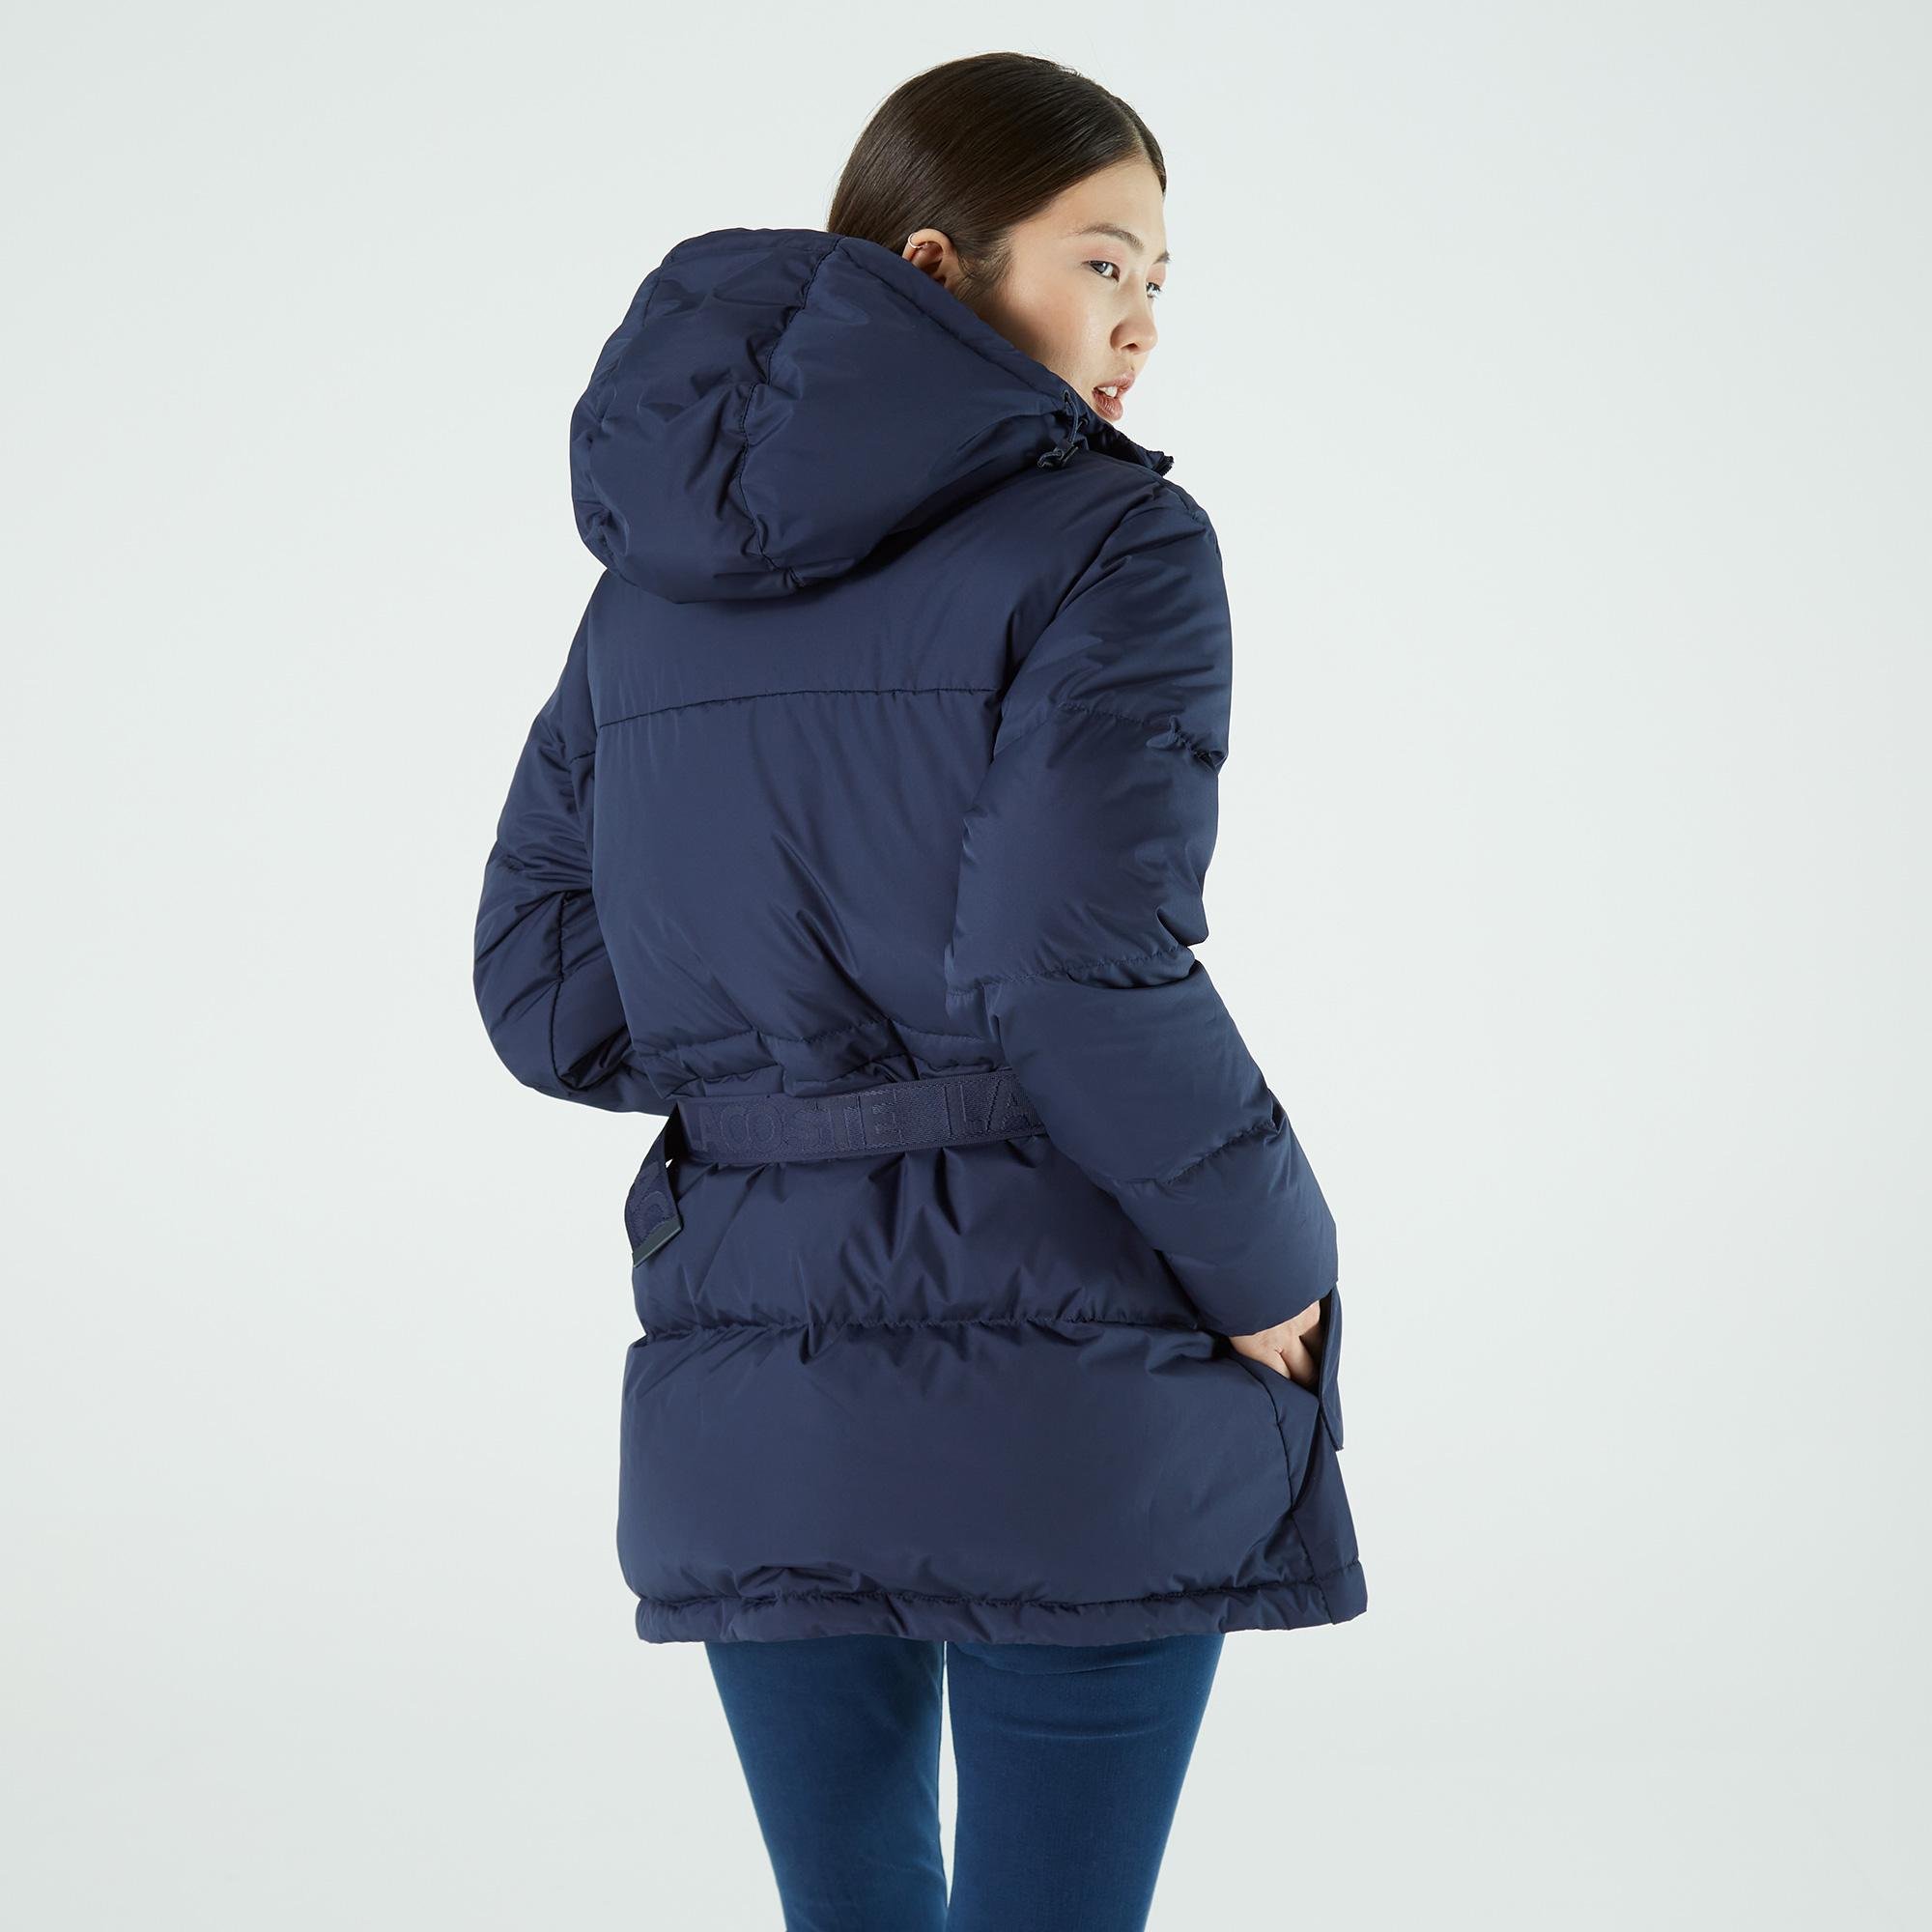 Lacoste dámská prošívaná bunda s kapucí a s barevnými pásy